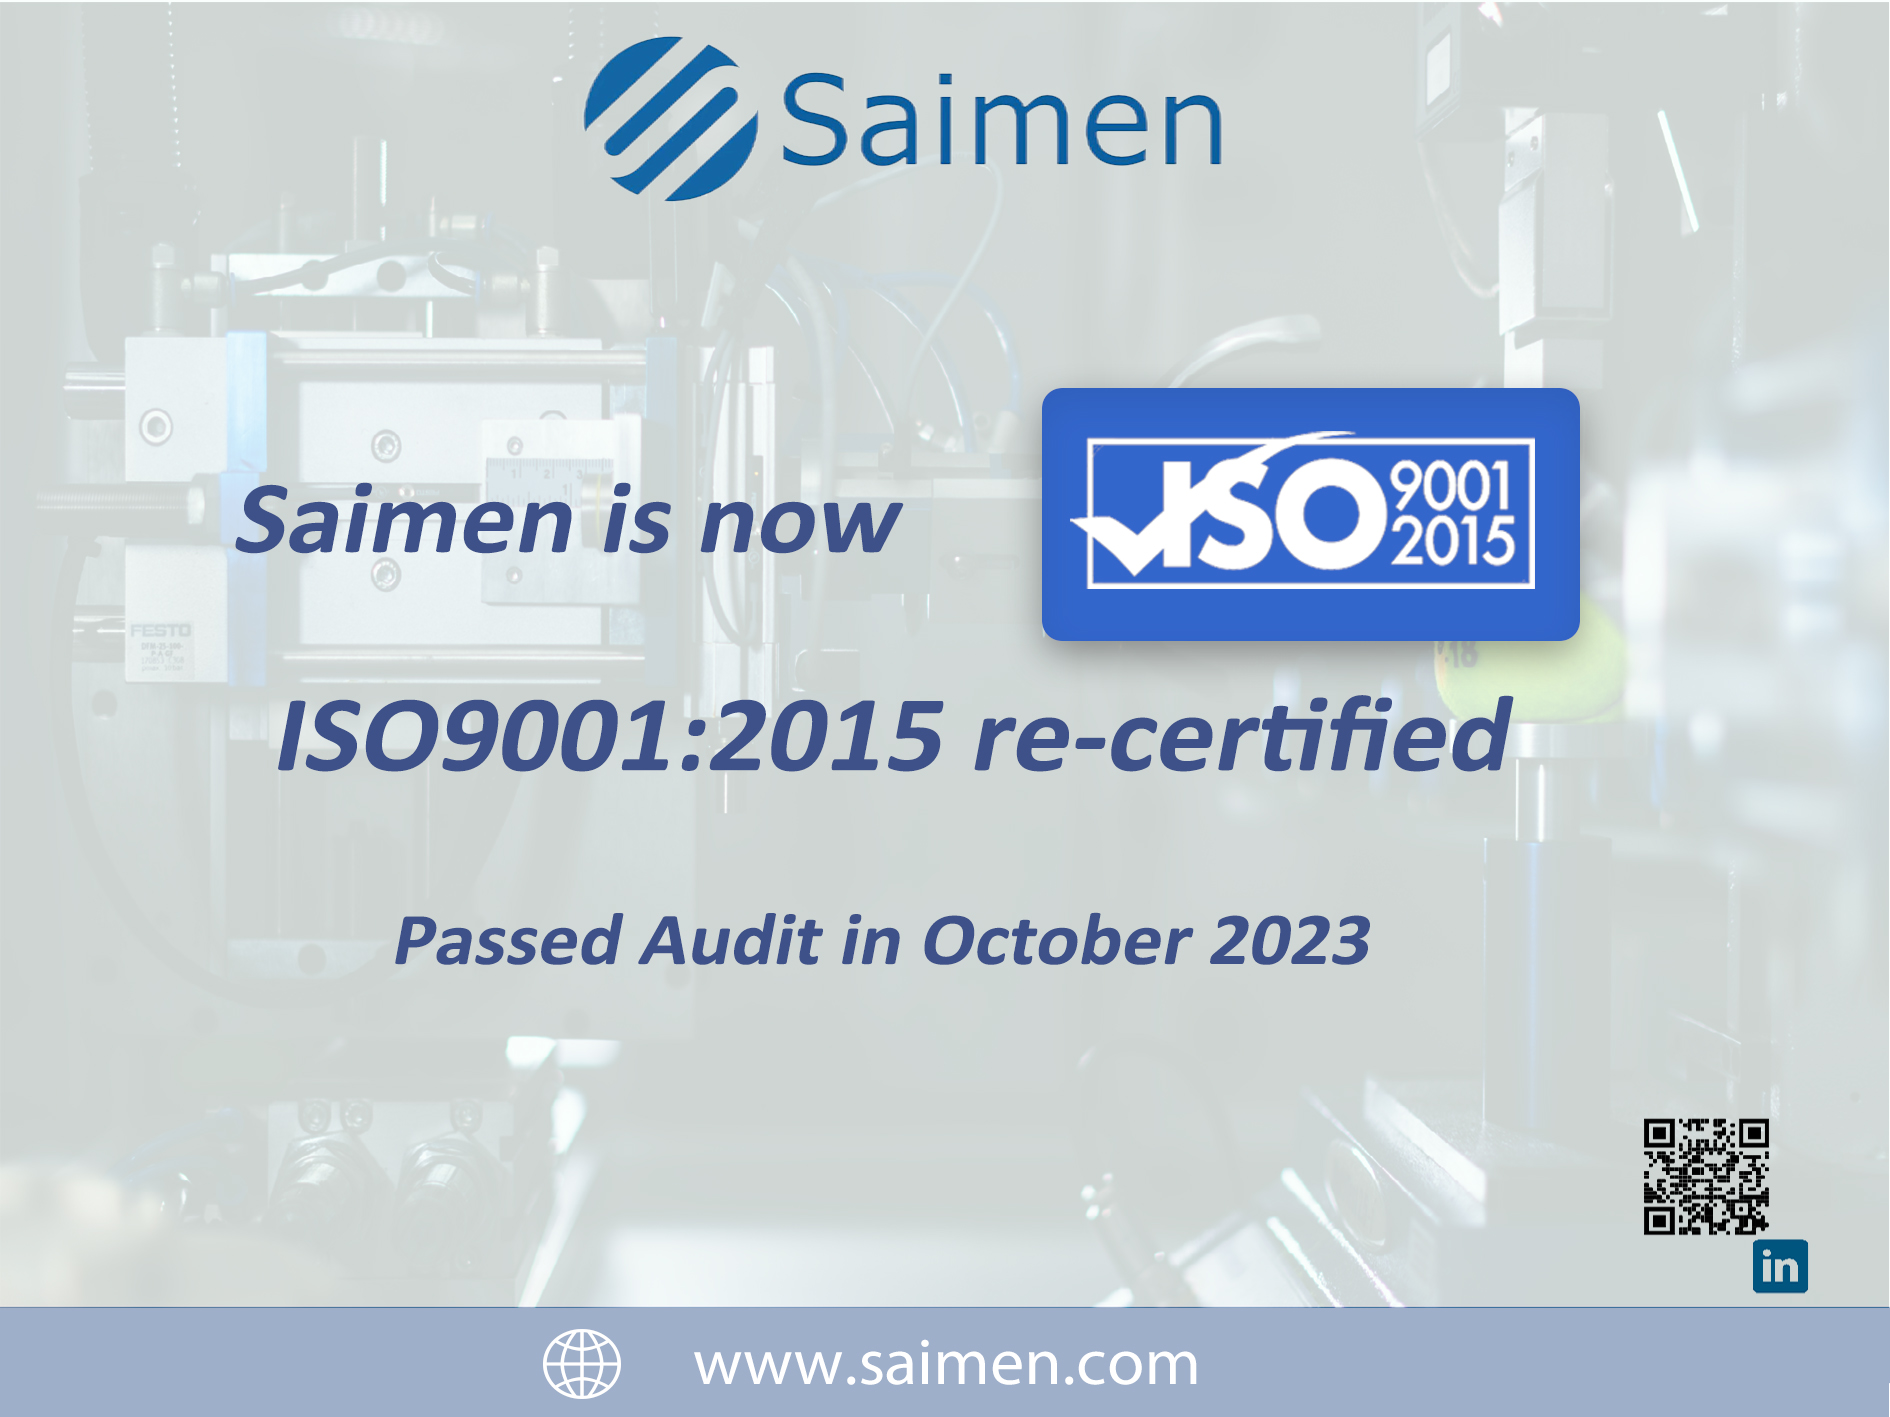 Saimen rinnova con successo la certificazione ISO9001